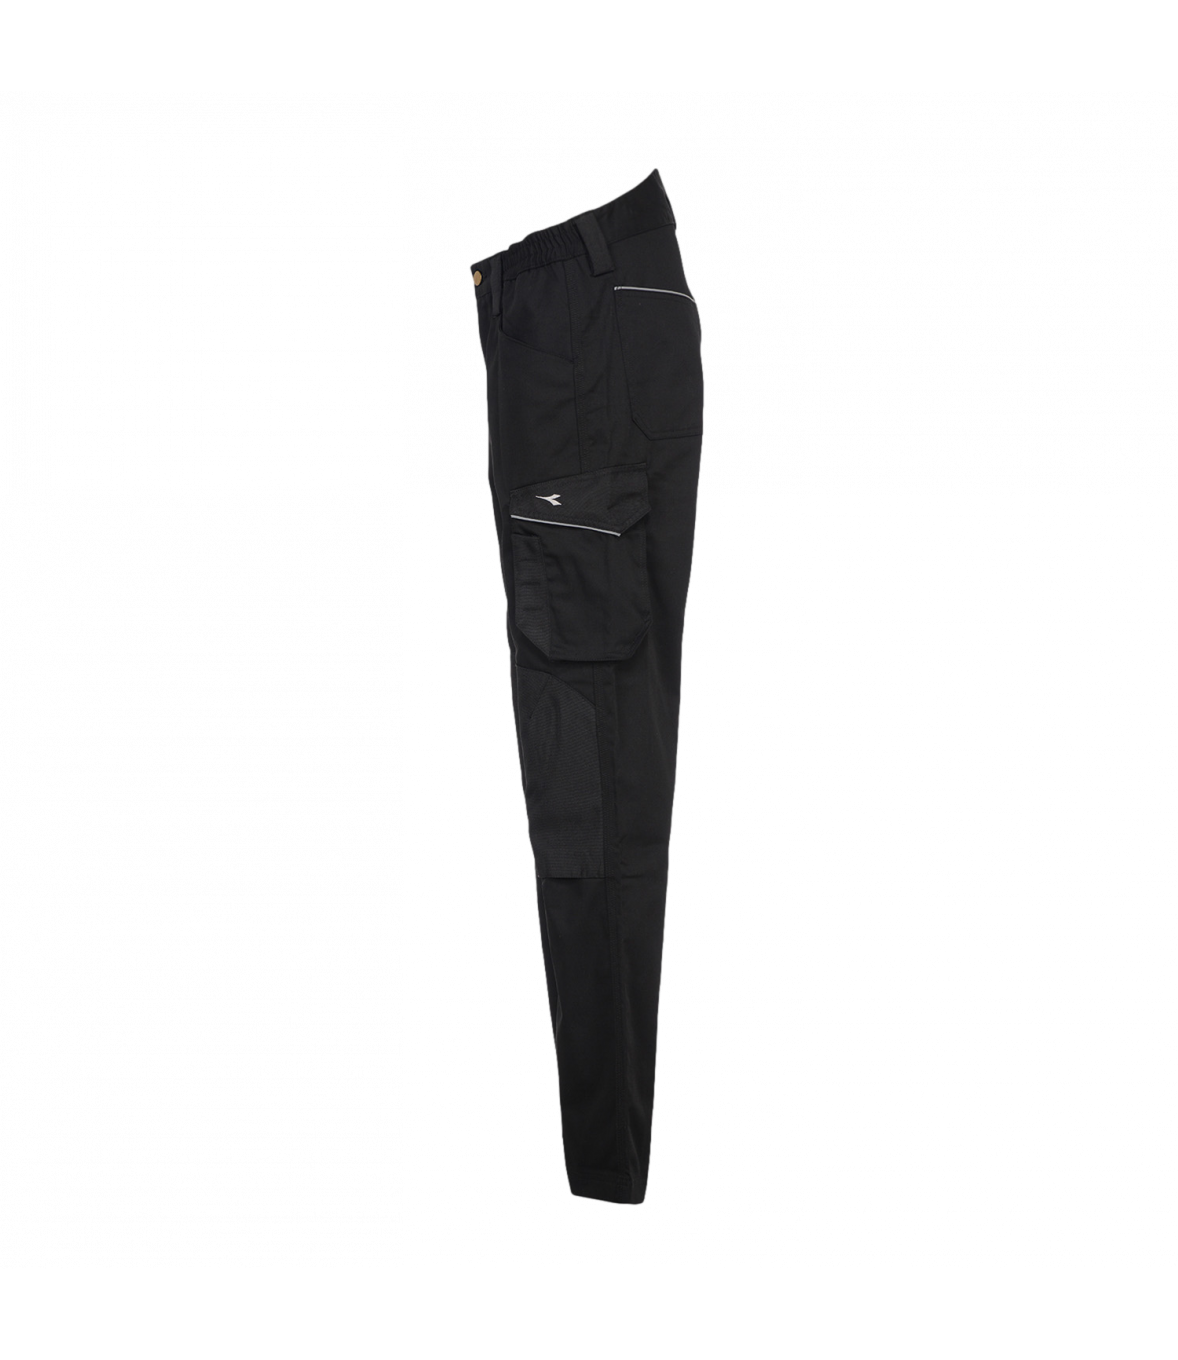 DiadoraDiadora Pantalon Cargo WAYET II ISO 13688:2013 Vêtement Marque  Lot de 1 